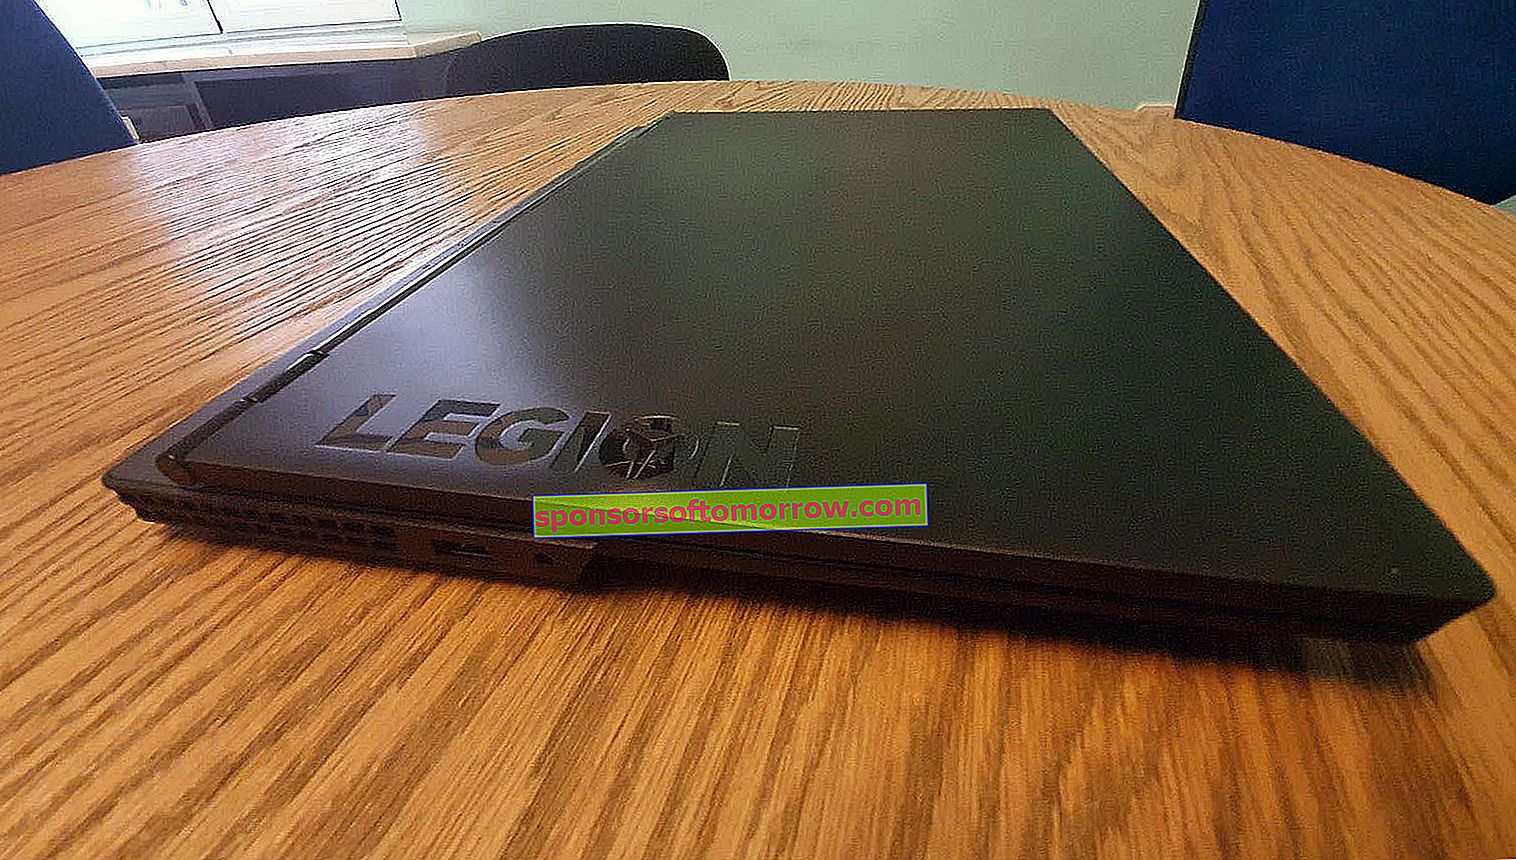 Lenovo-Legion-Y530 תצוגה מהפרופיל